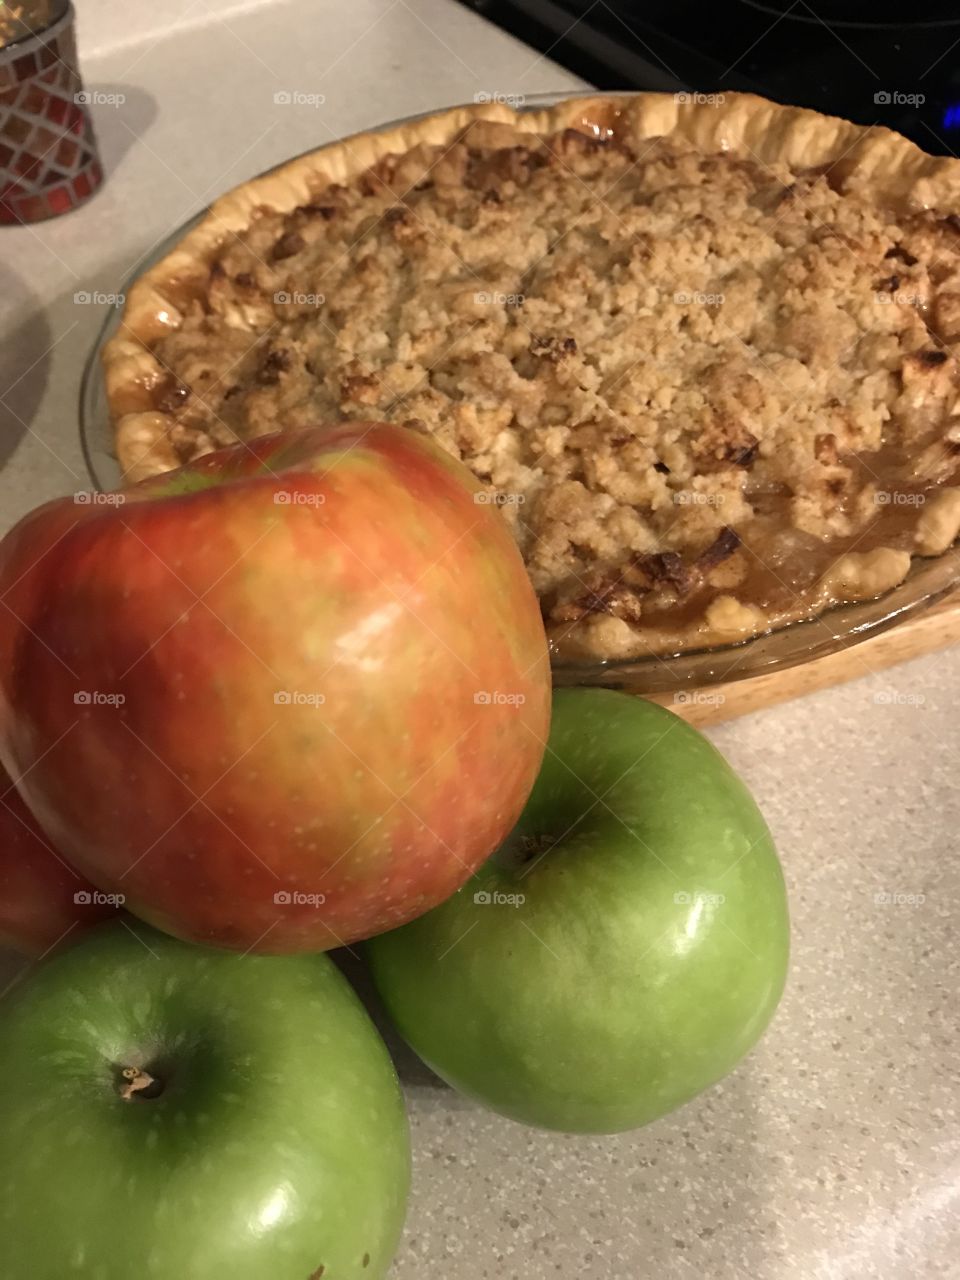 Apple pie 